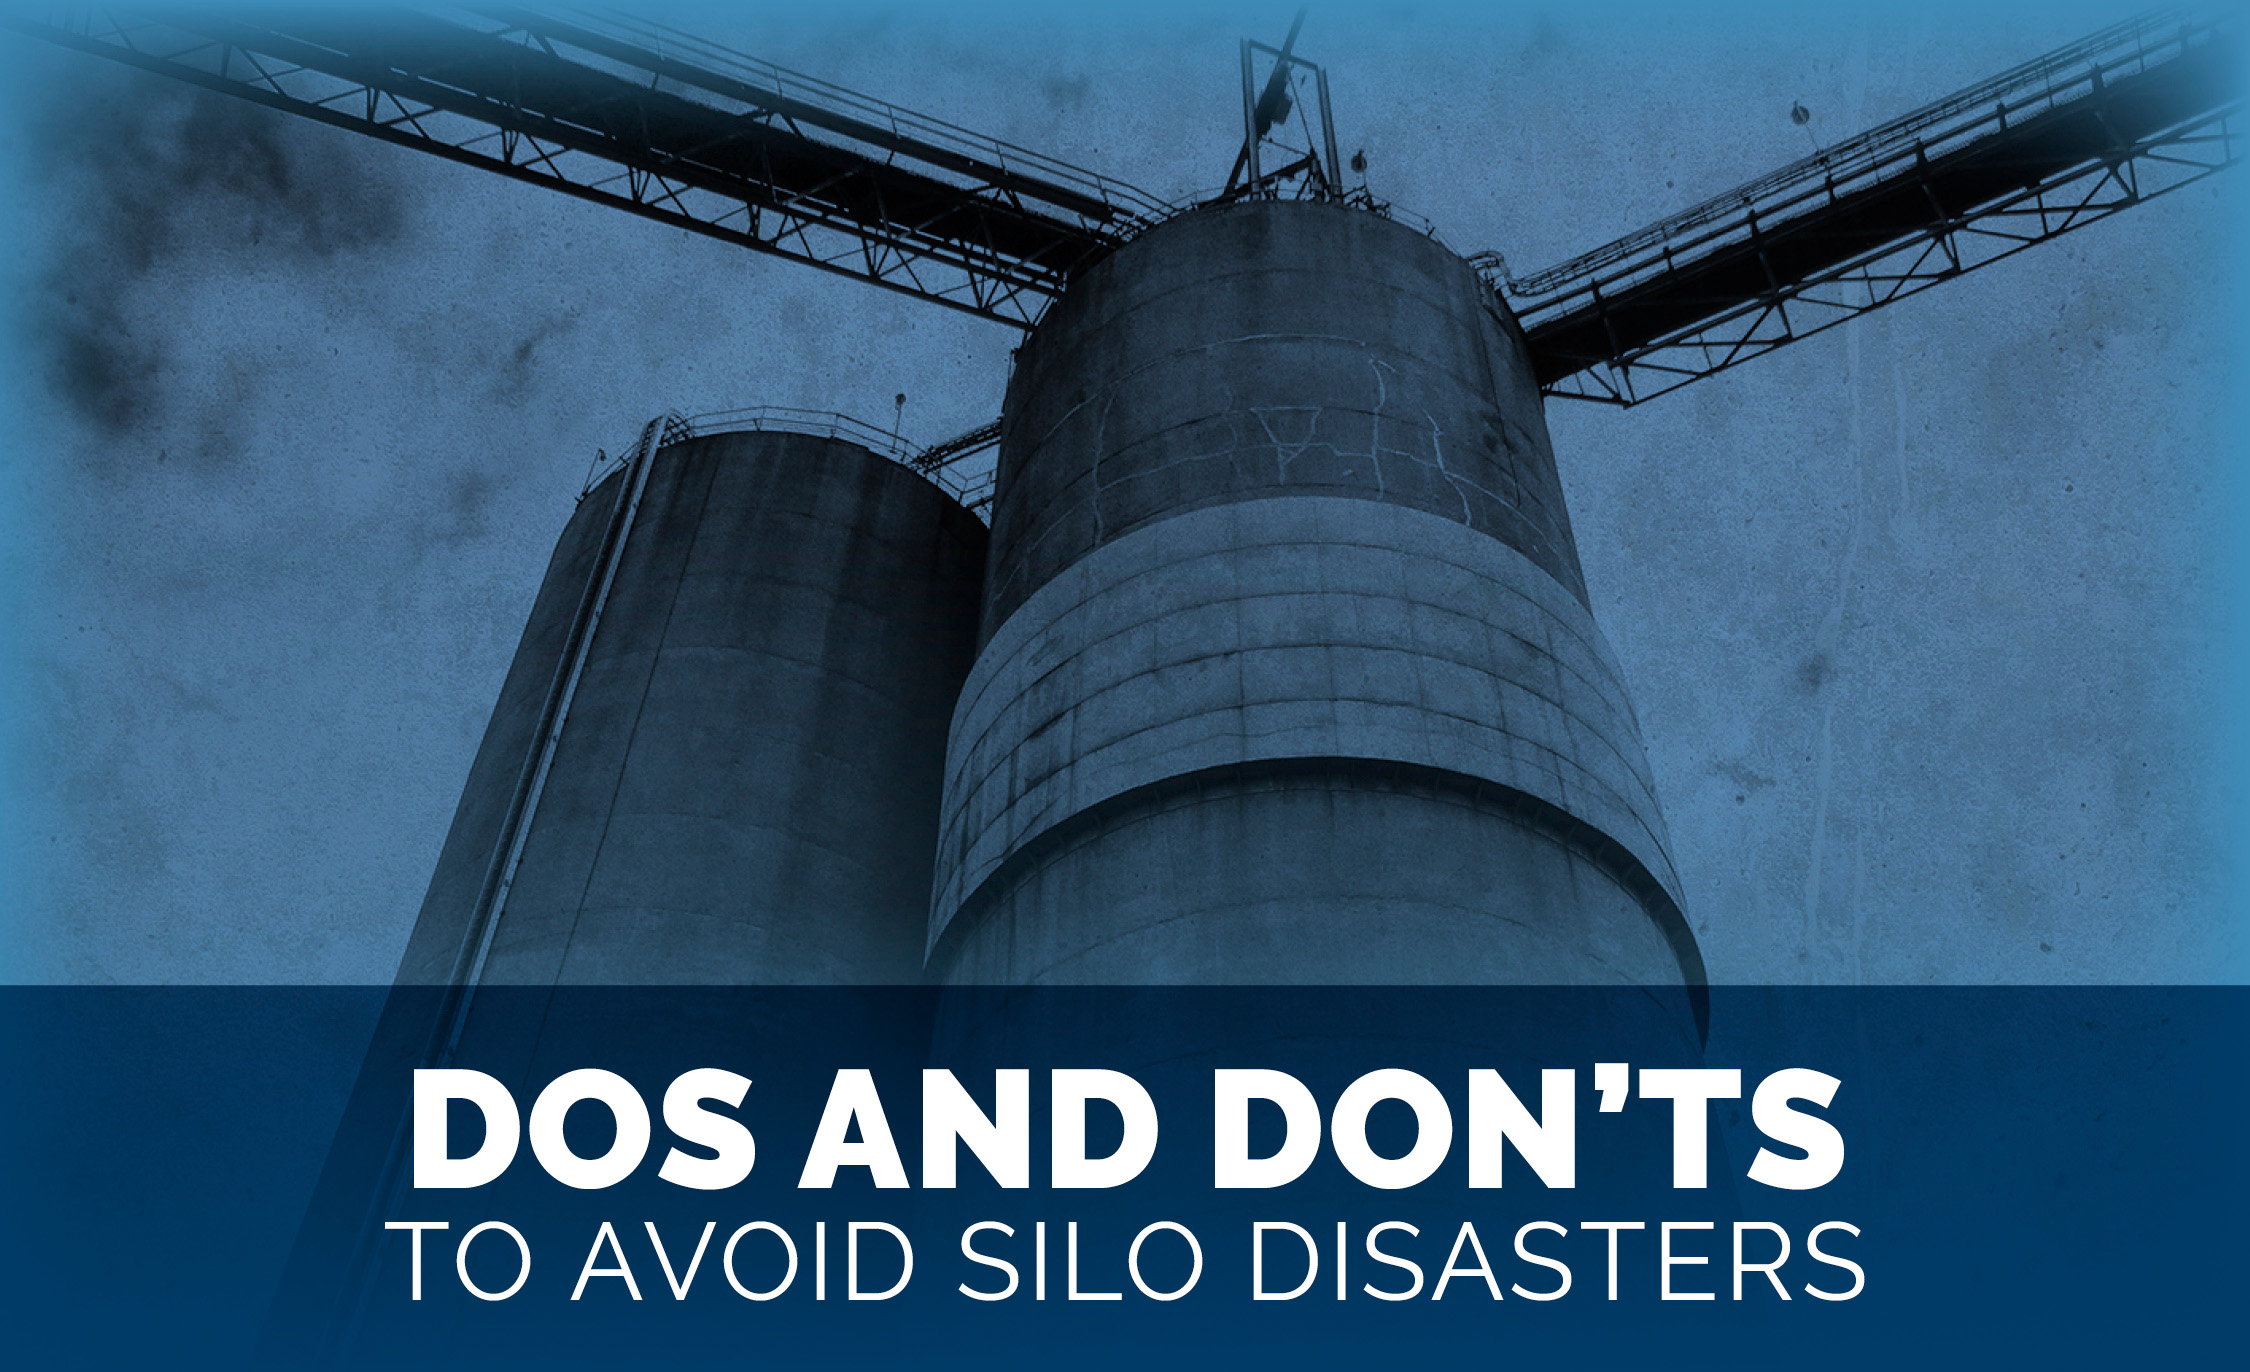 Avoid Silo Disasters